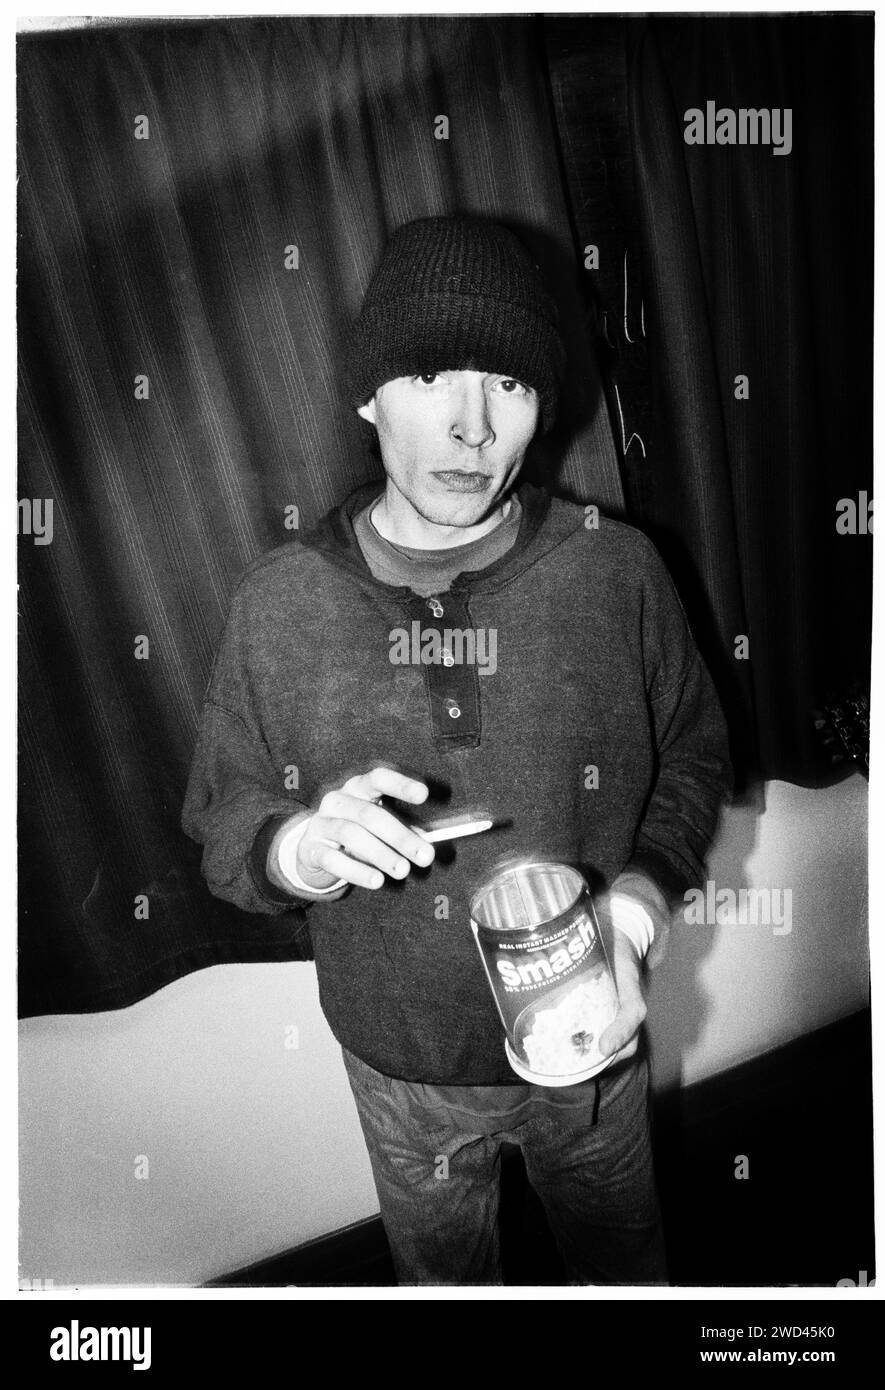 Ed Borrie von der Punkband S*M*A*S*H (SMASH) fotografierte Backstage bei Newport TJs, Wales, UK am 13. Oktober 1994. Foto: Rob Watkins. INFO: SMASH, eine britische Punkband aus den 90ern, hat sich dem DIY-Ethos angeschlossen. Ihr energiegeladener Sound, angetrieben von politisch aufgeladenen Texten, fand eine Anhängerschaft. Hymnen wie „I Want to Kill Someone“ und „Shame“ fesselten den rebellischen Geist der Punkszene während ihrer aktiven Jahre. Stockfoto